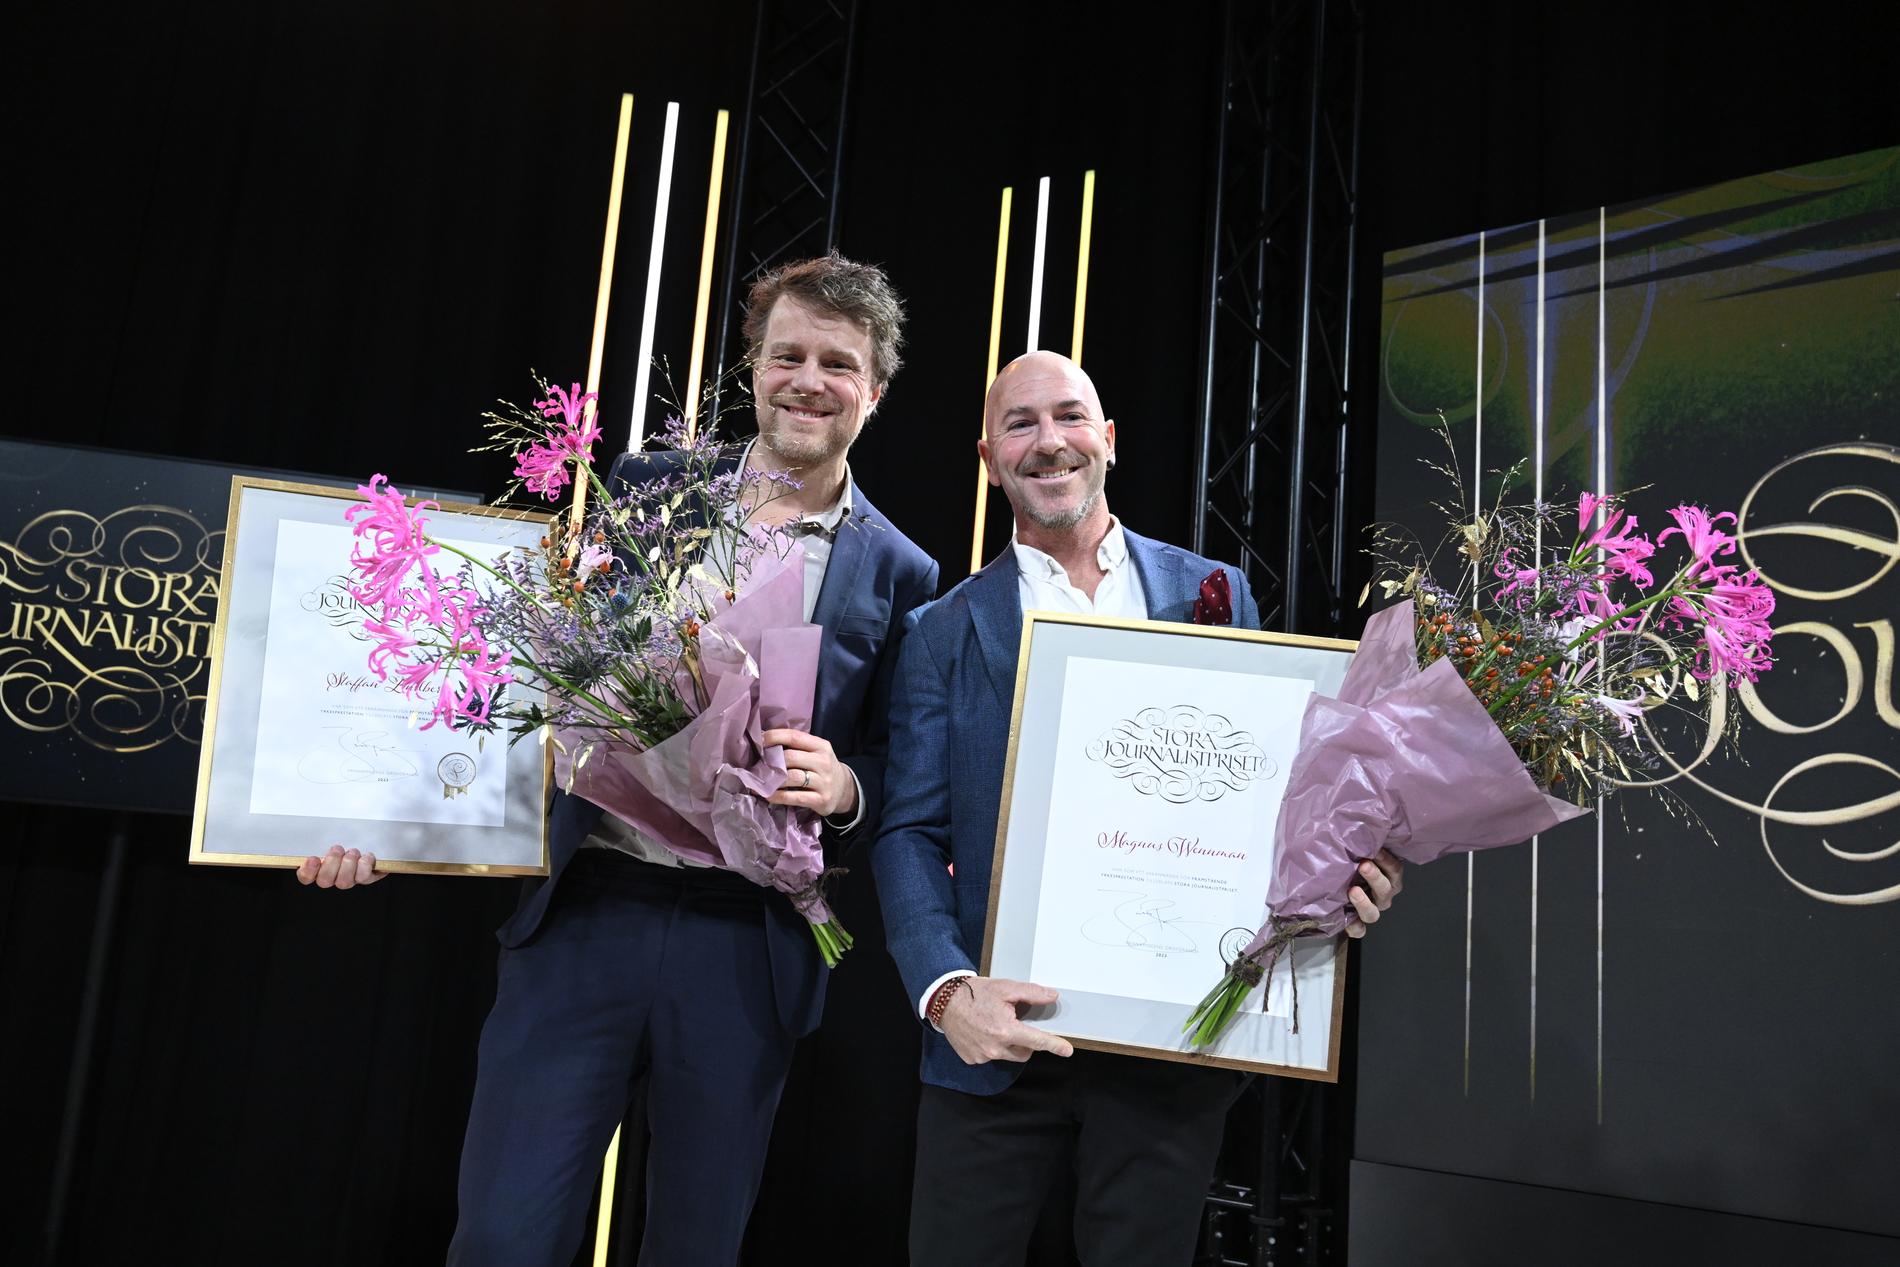 Aftonbladets Staffan Lindberg och Magnus Wennman vann Årets avslöjande för sin granskningen H&M och återvinningen.